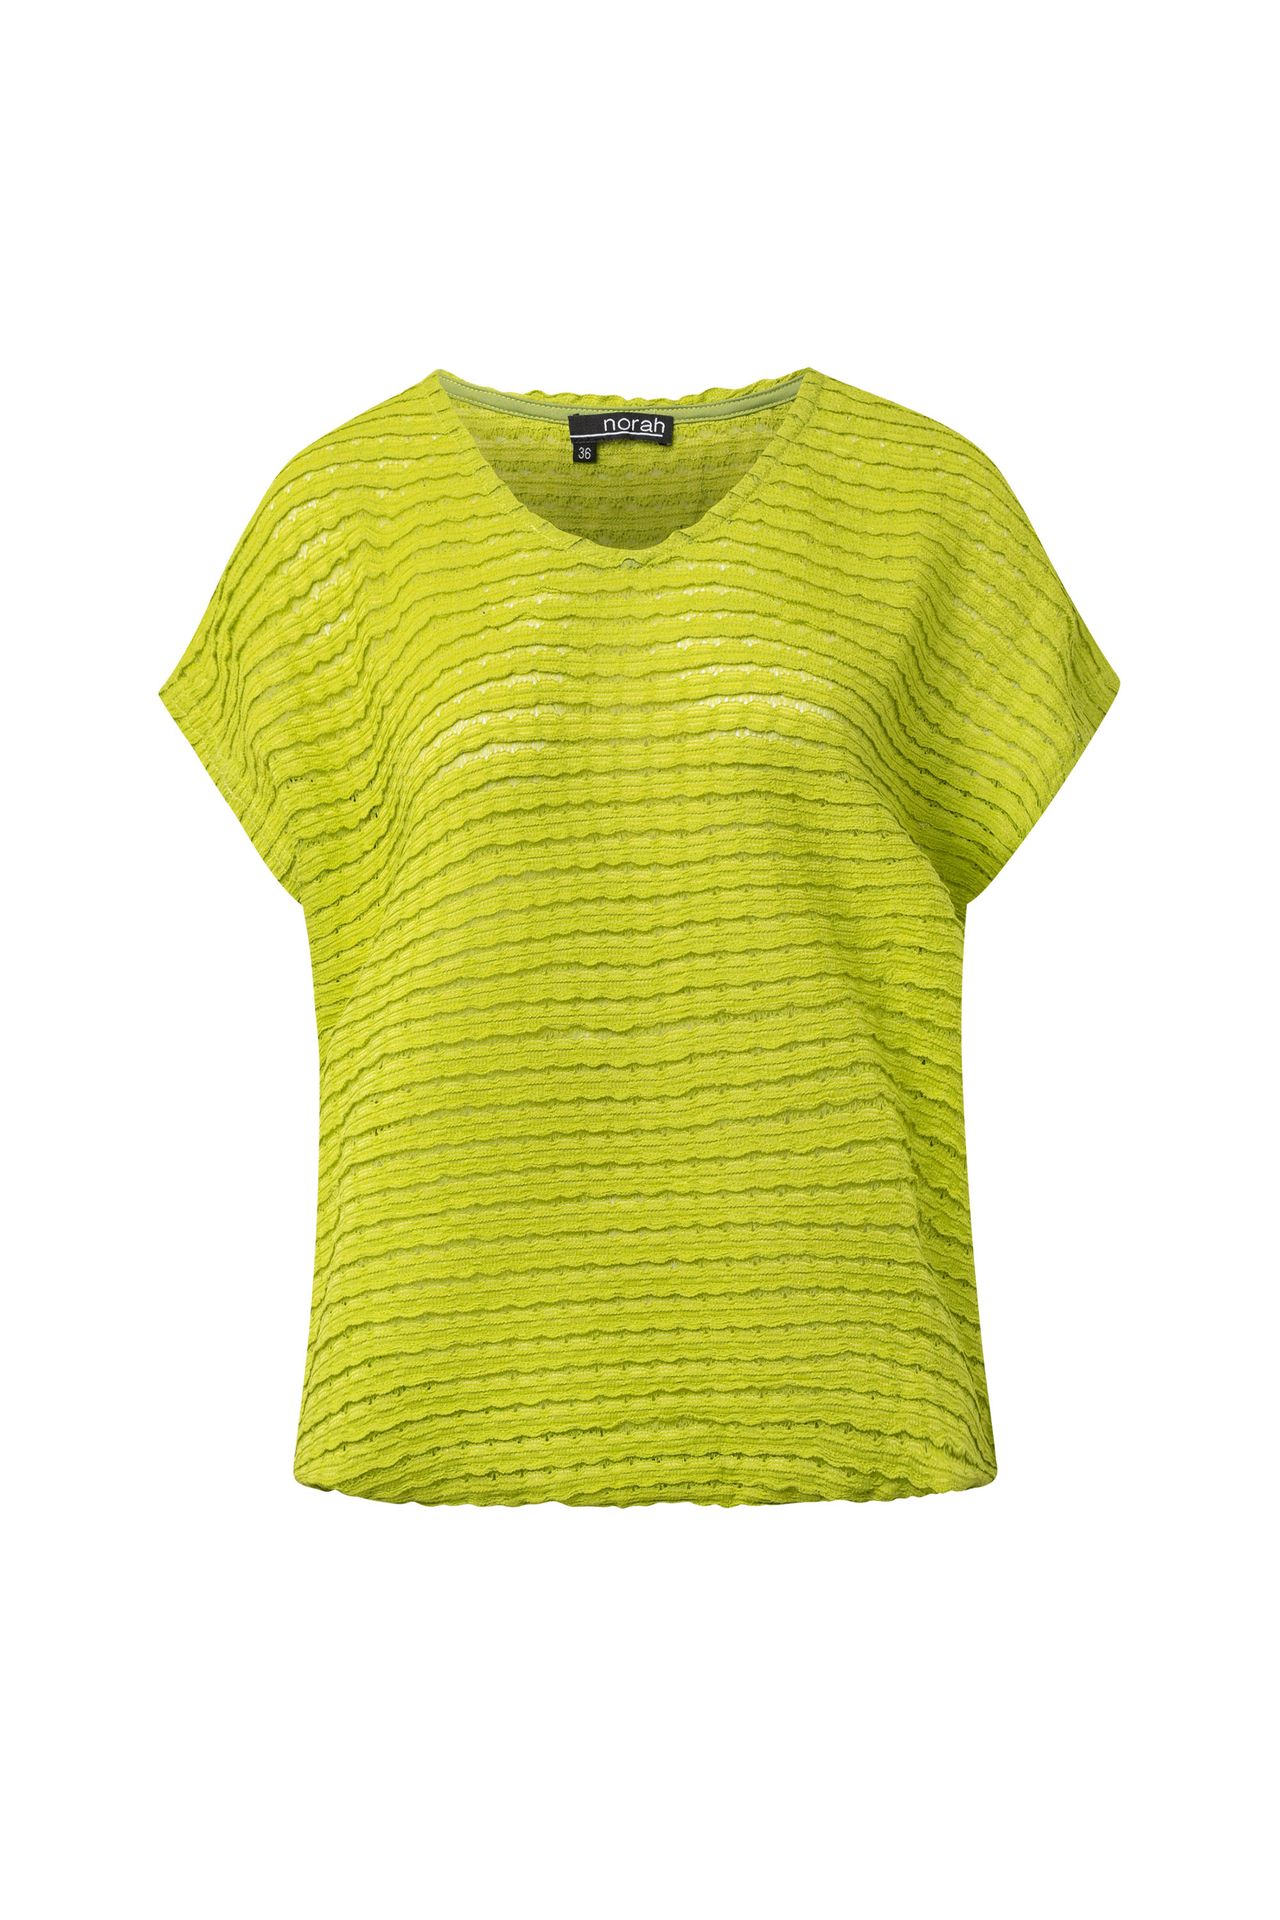  Limegroen shirt lime 214669-506-36